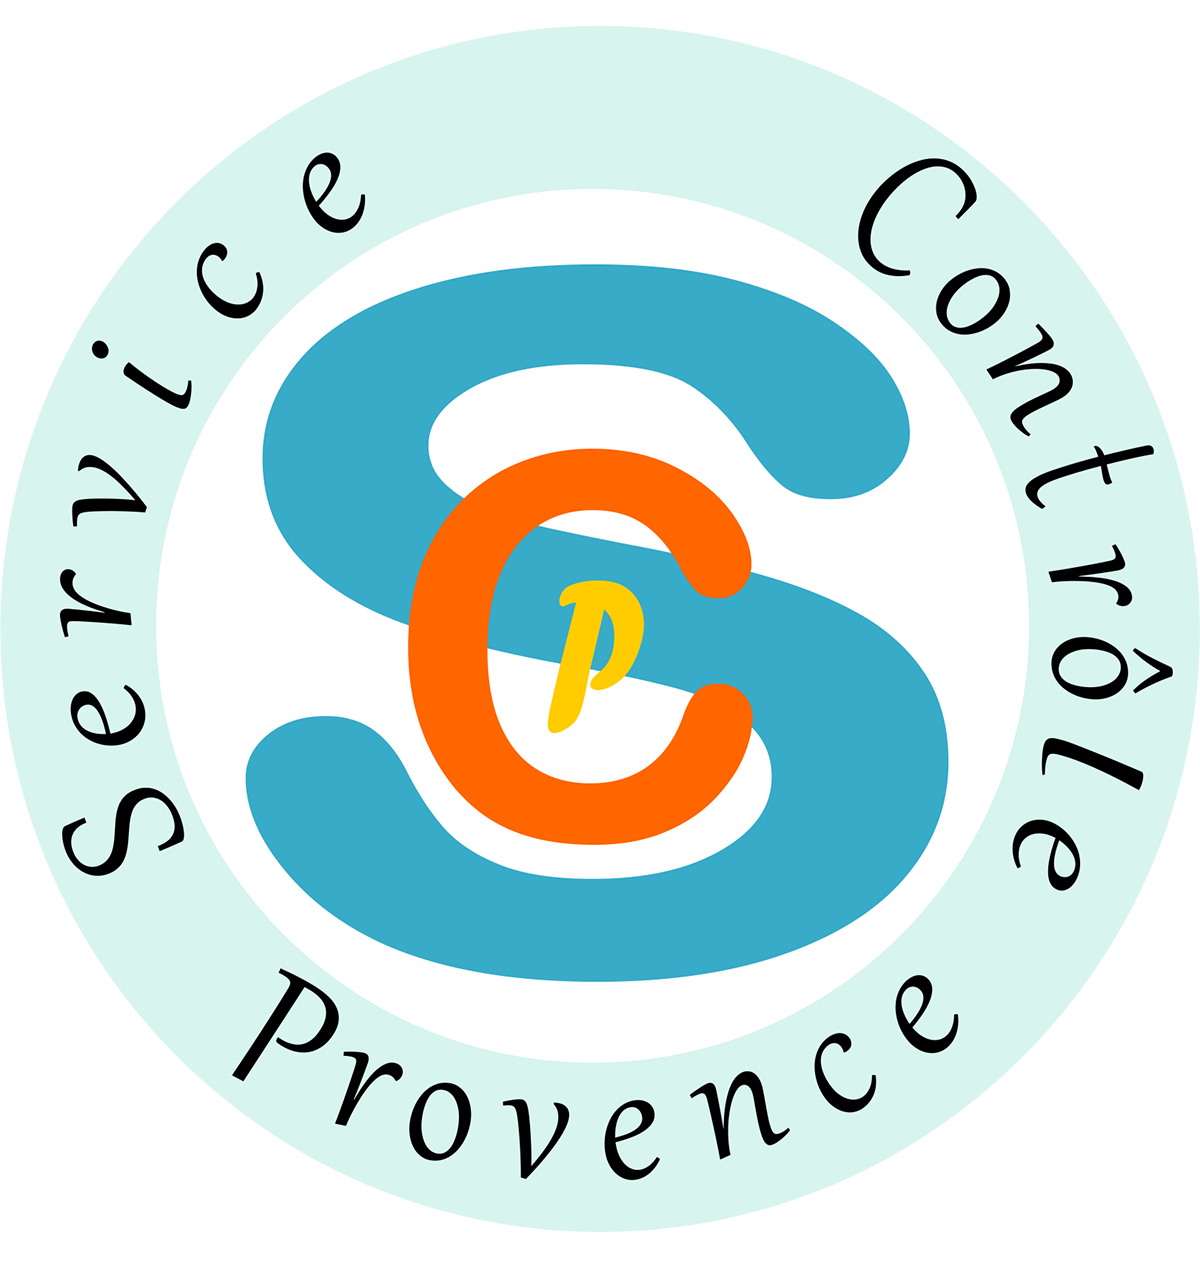 Logo SCP